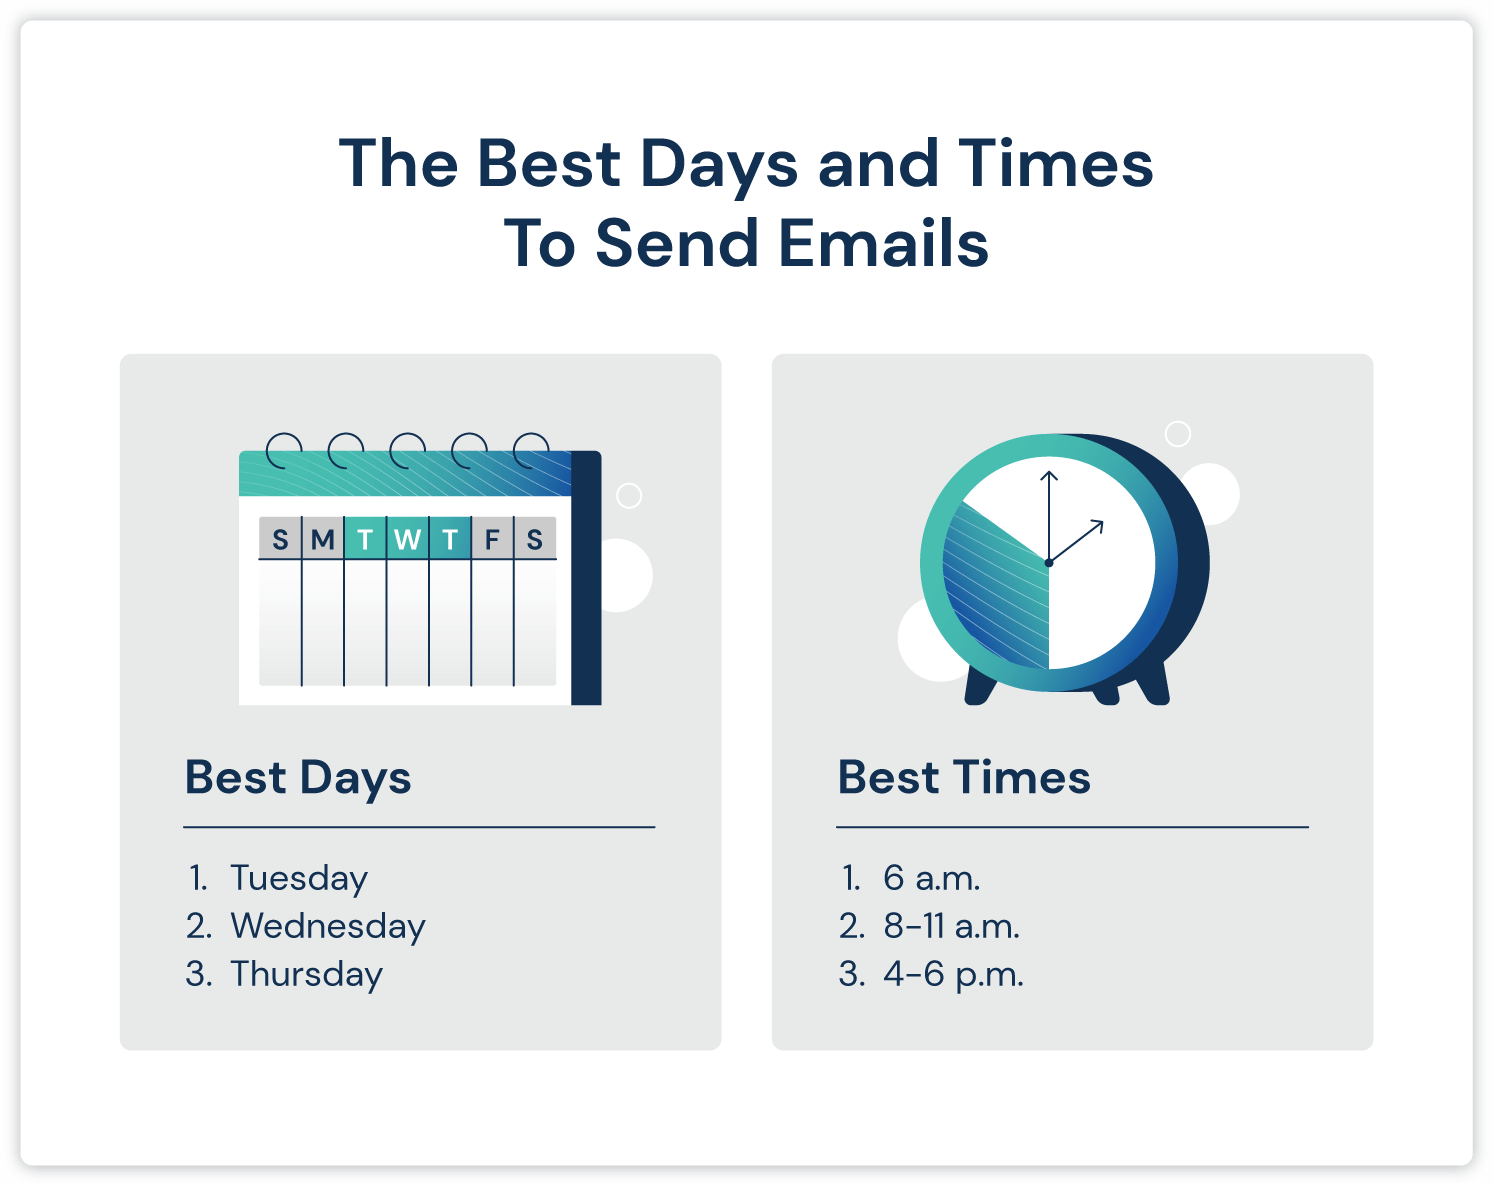 grafik hari dan waktu terbaik untuk mengirim email